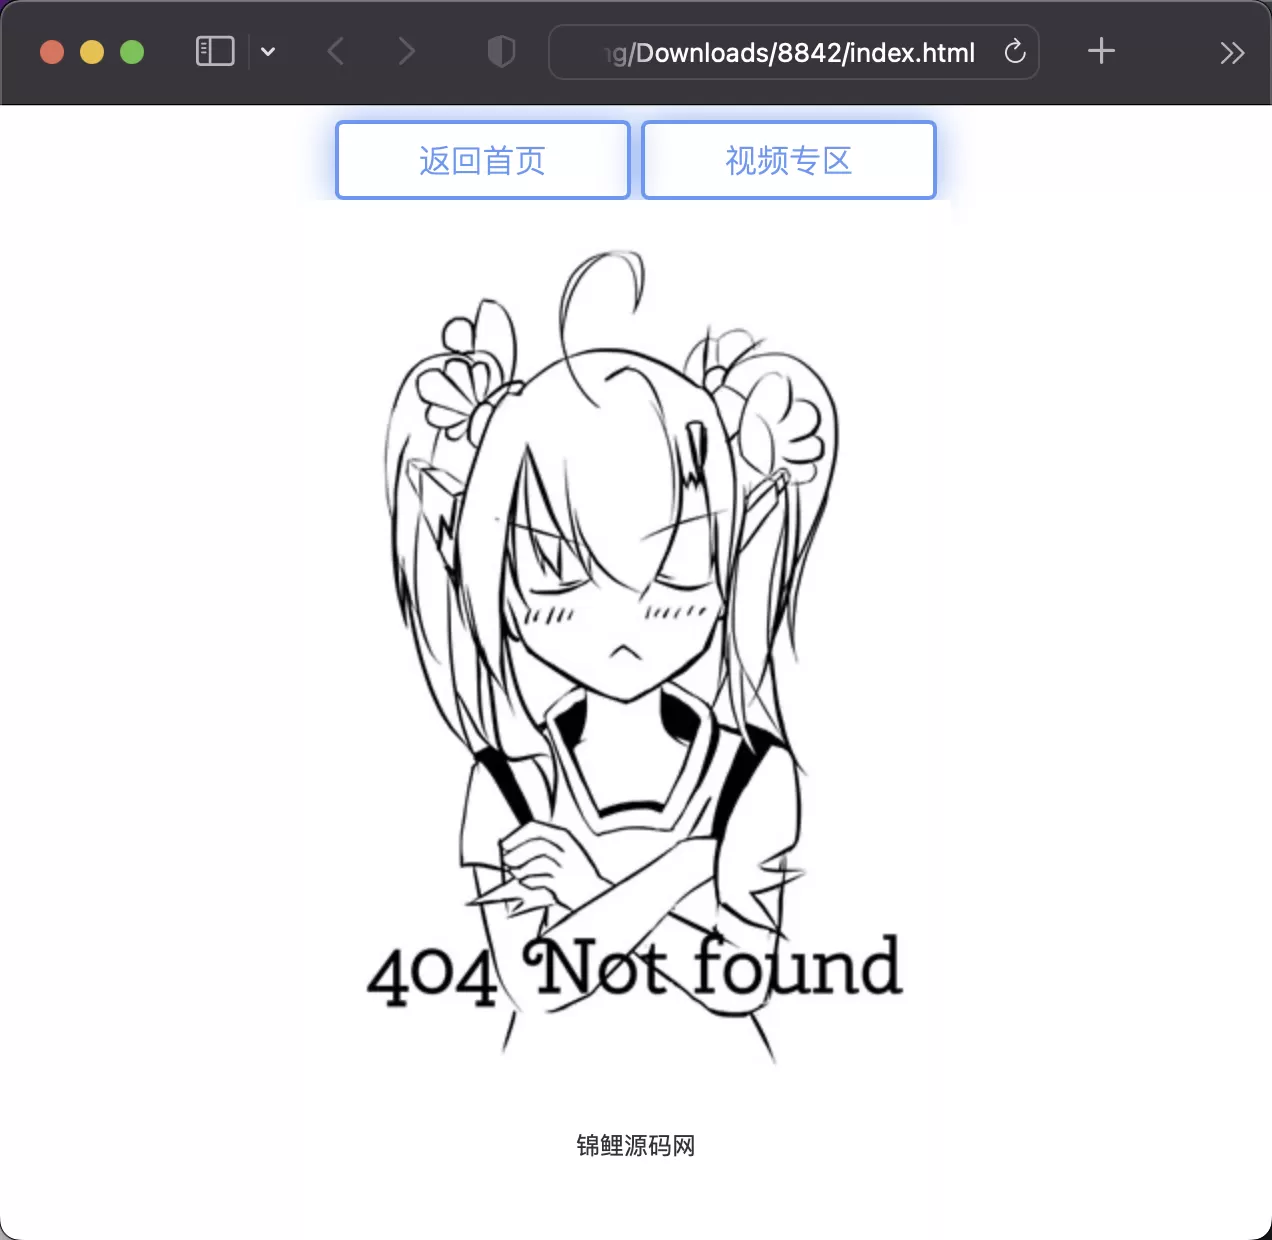 锦鲤已测|二次元风格404页面html模板 附人物语音 HTML 第1张